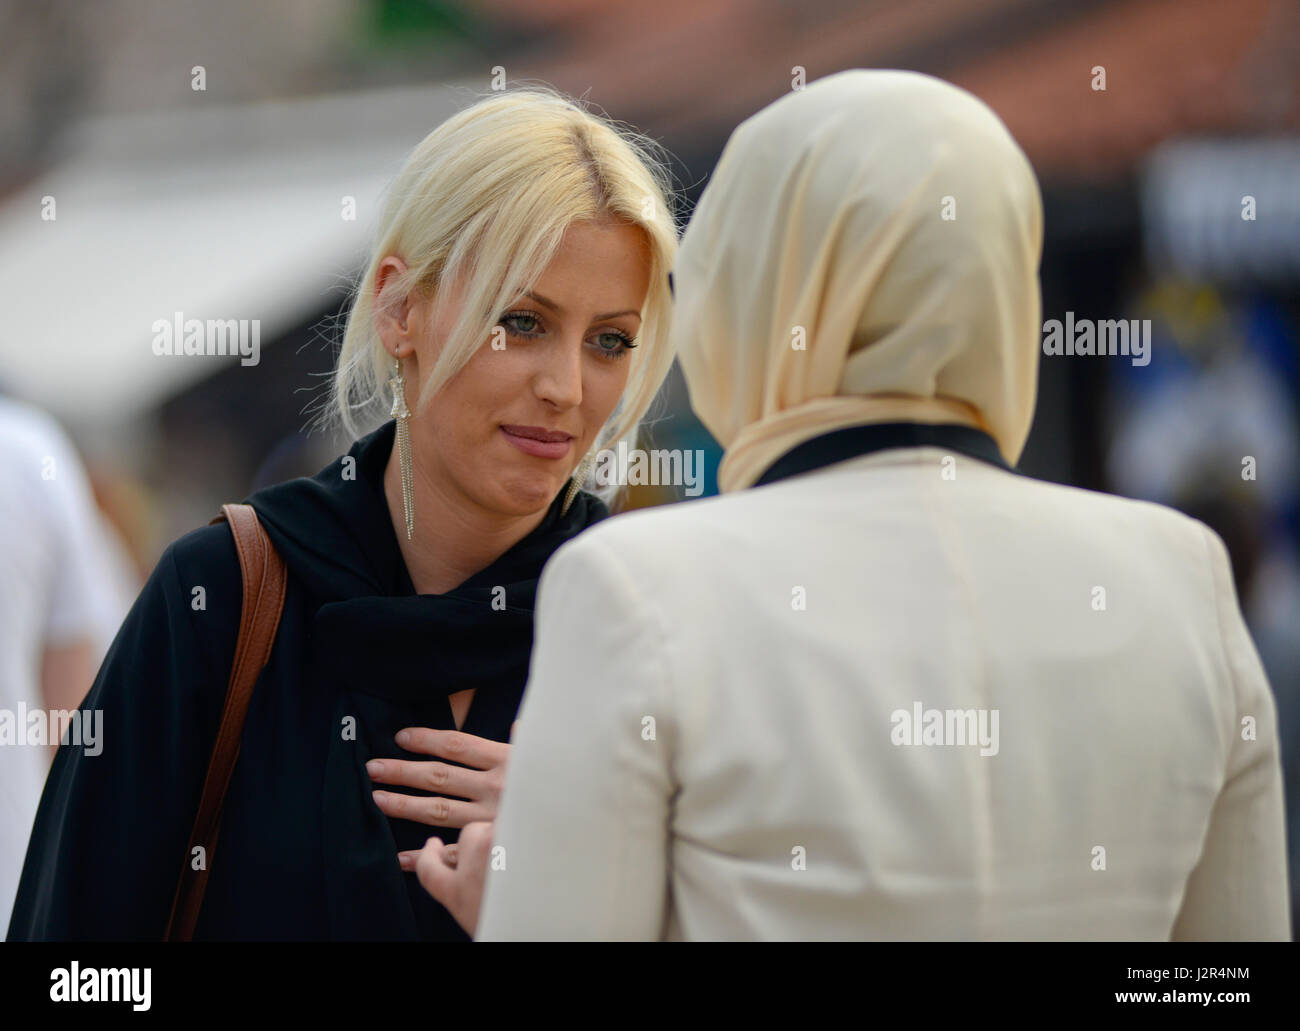 Ein blondes Mädchen im Gespräch mit ihren muslimischen Freund Stockfoto